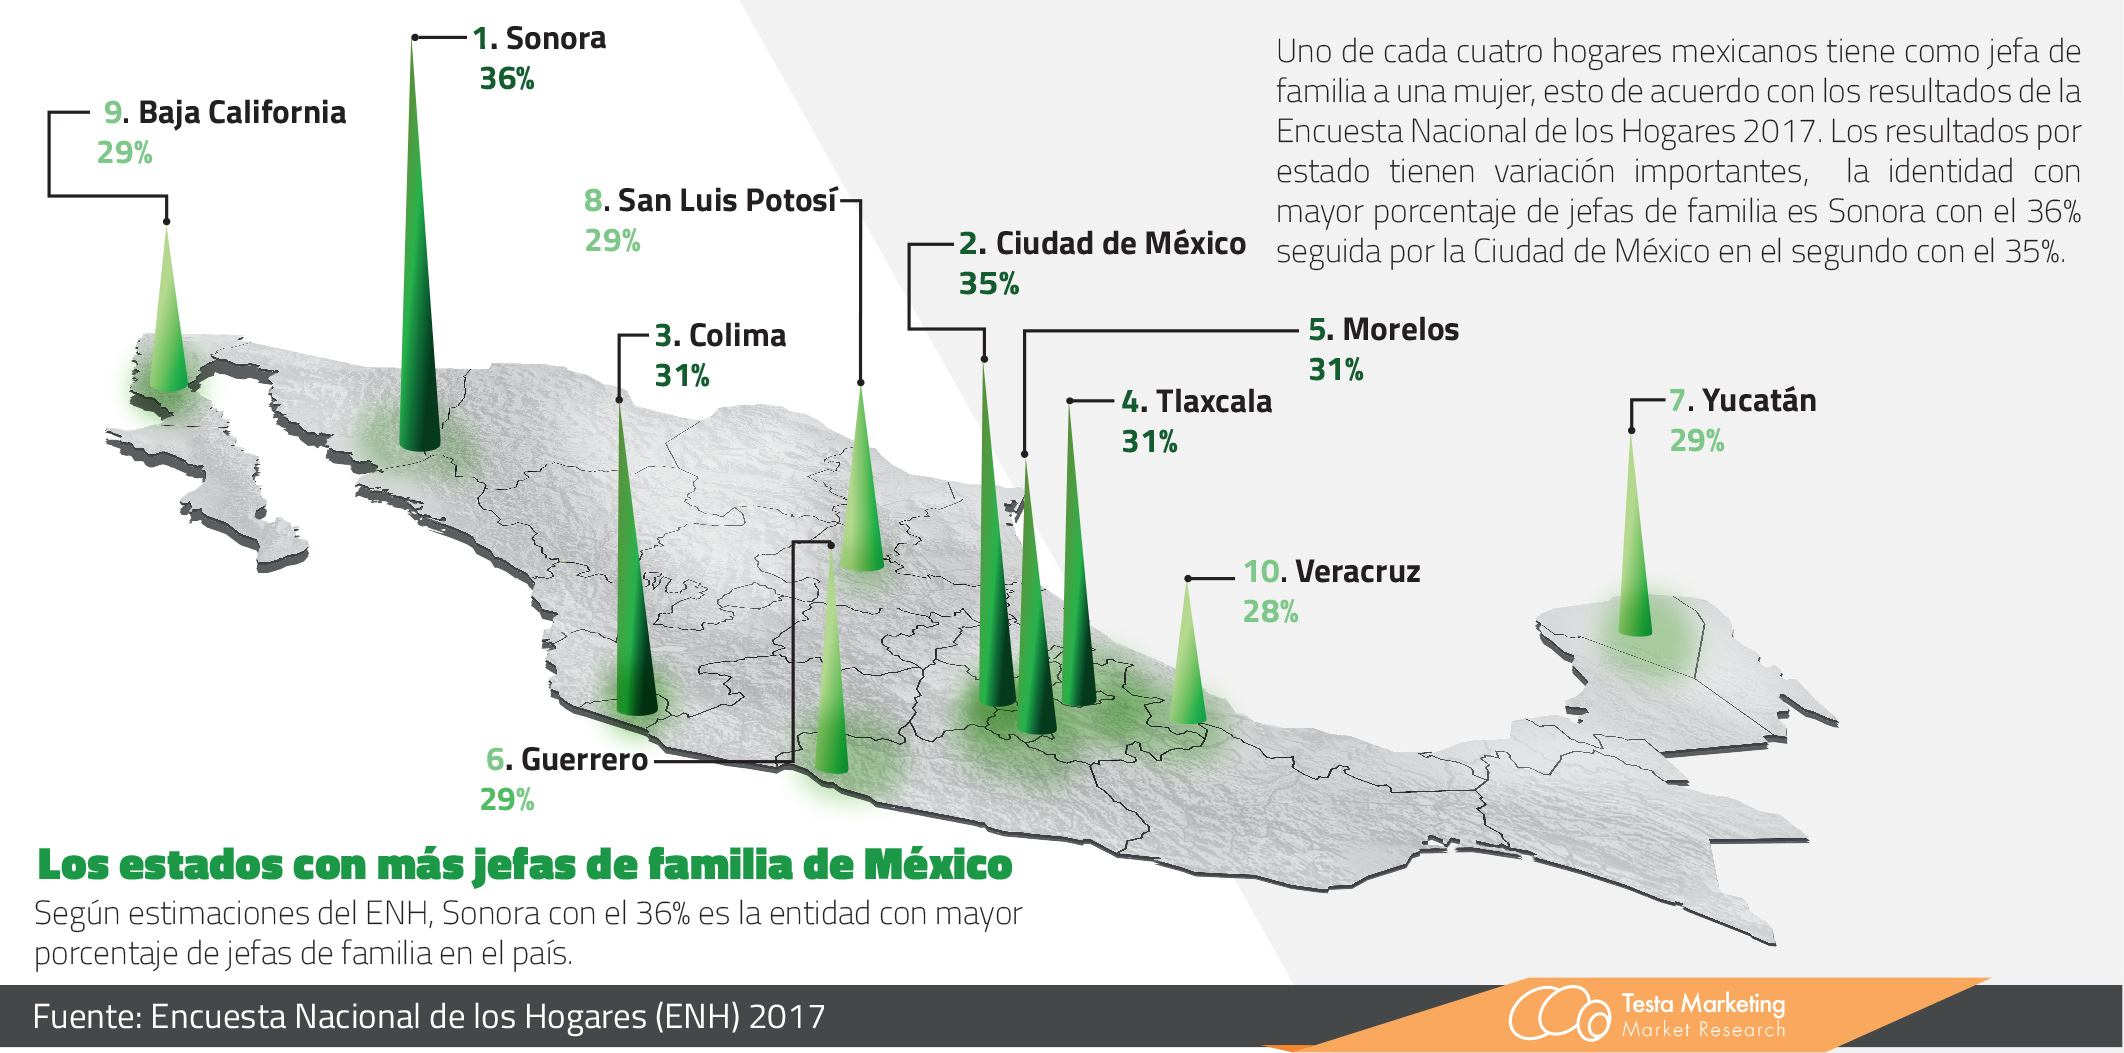 Los estados con más jefas de familia de México